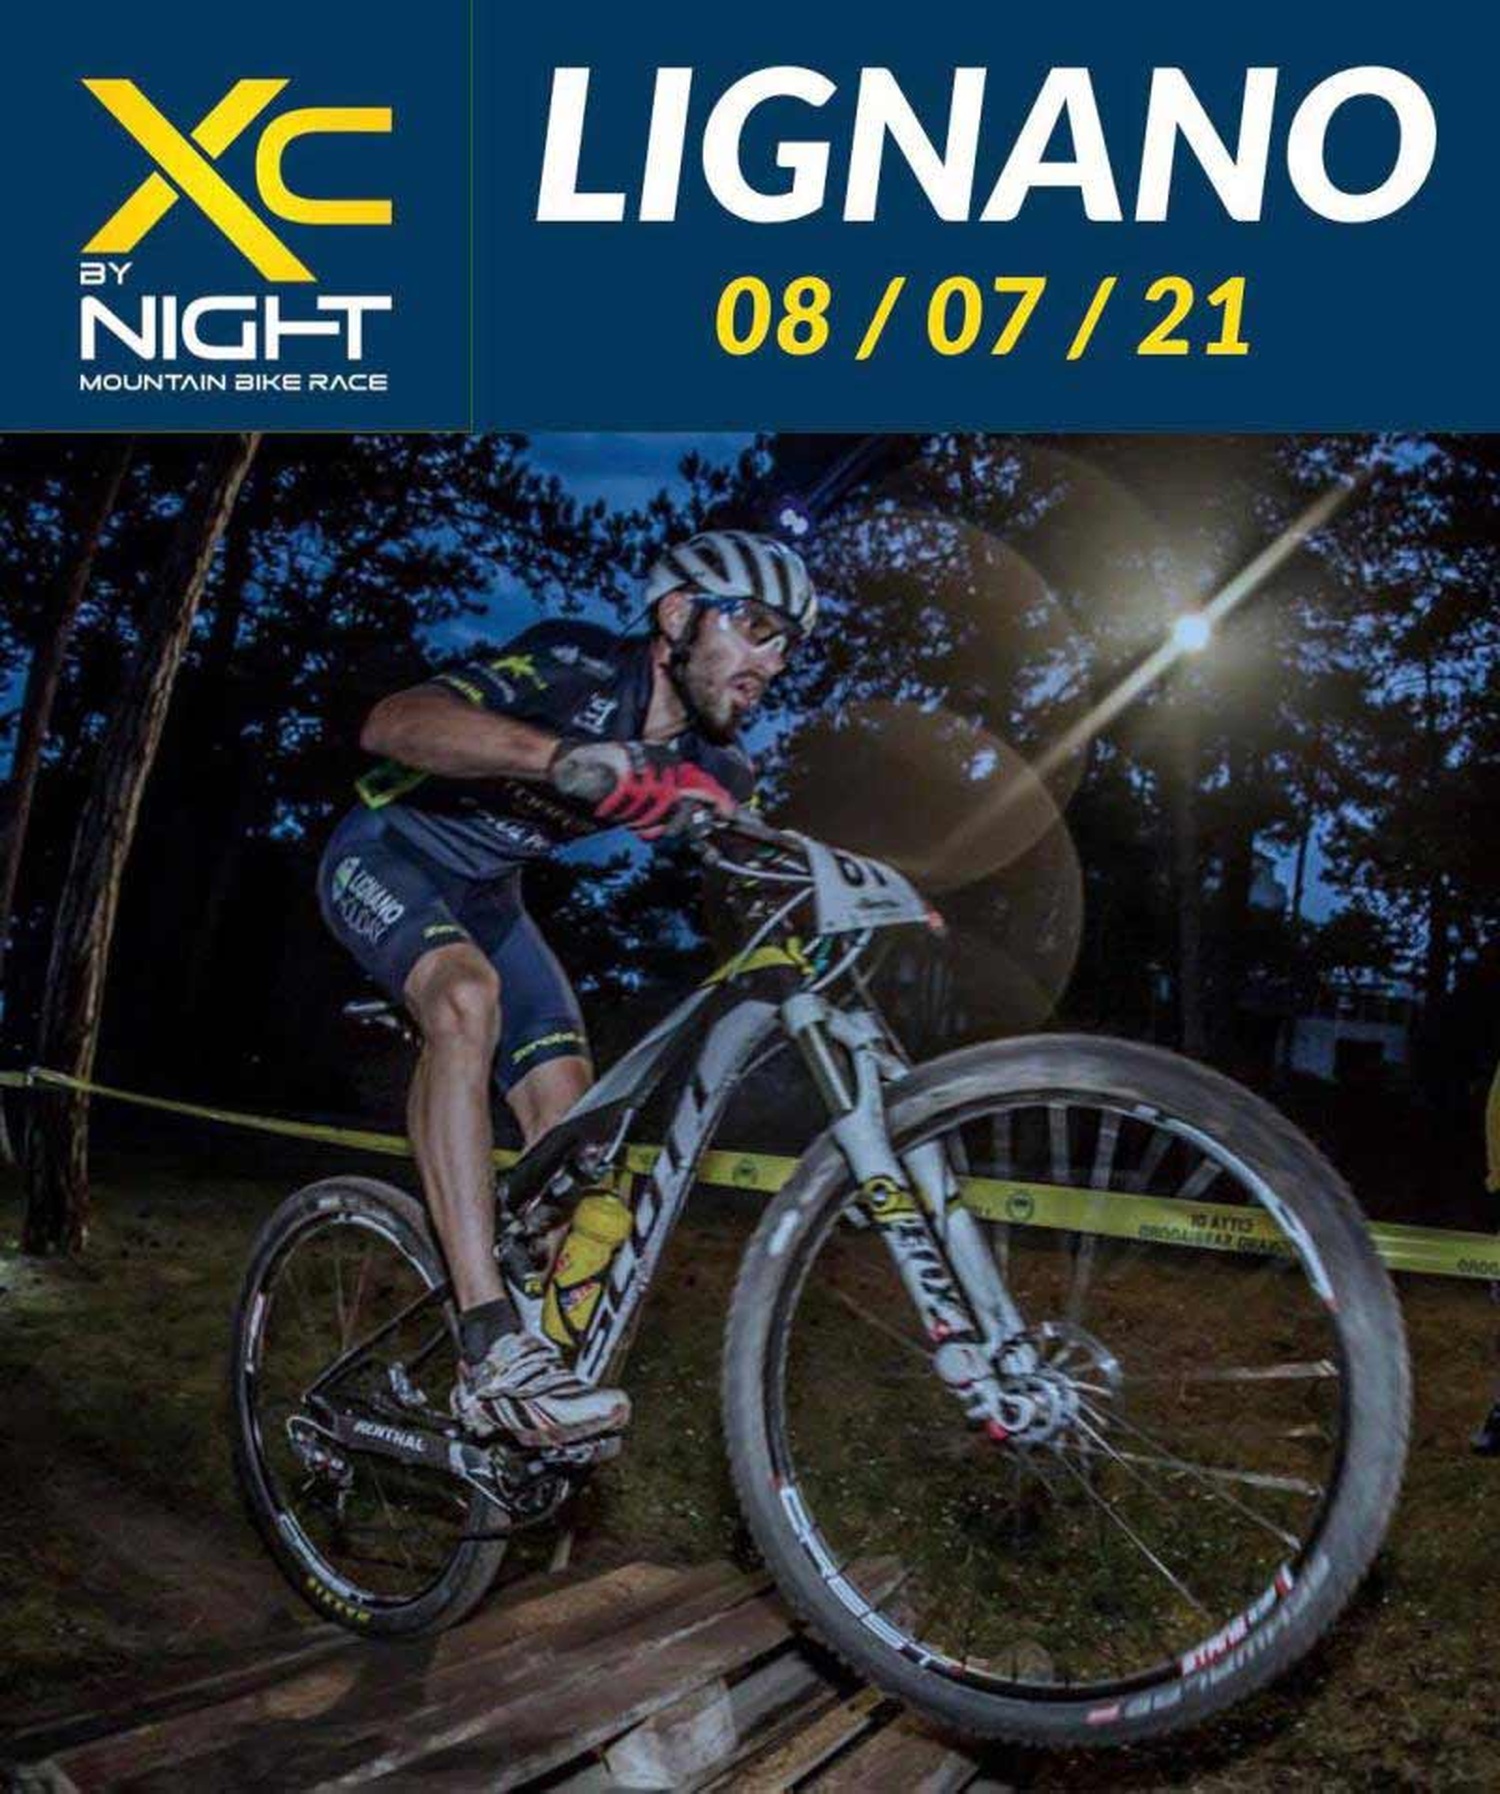 Fotos vonLignano XC Bike Night